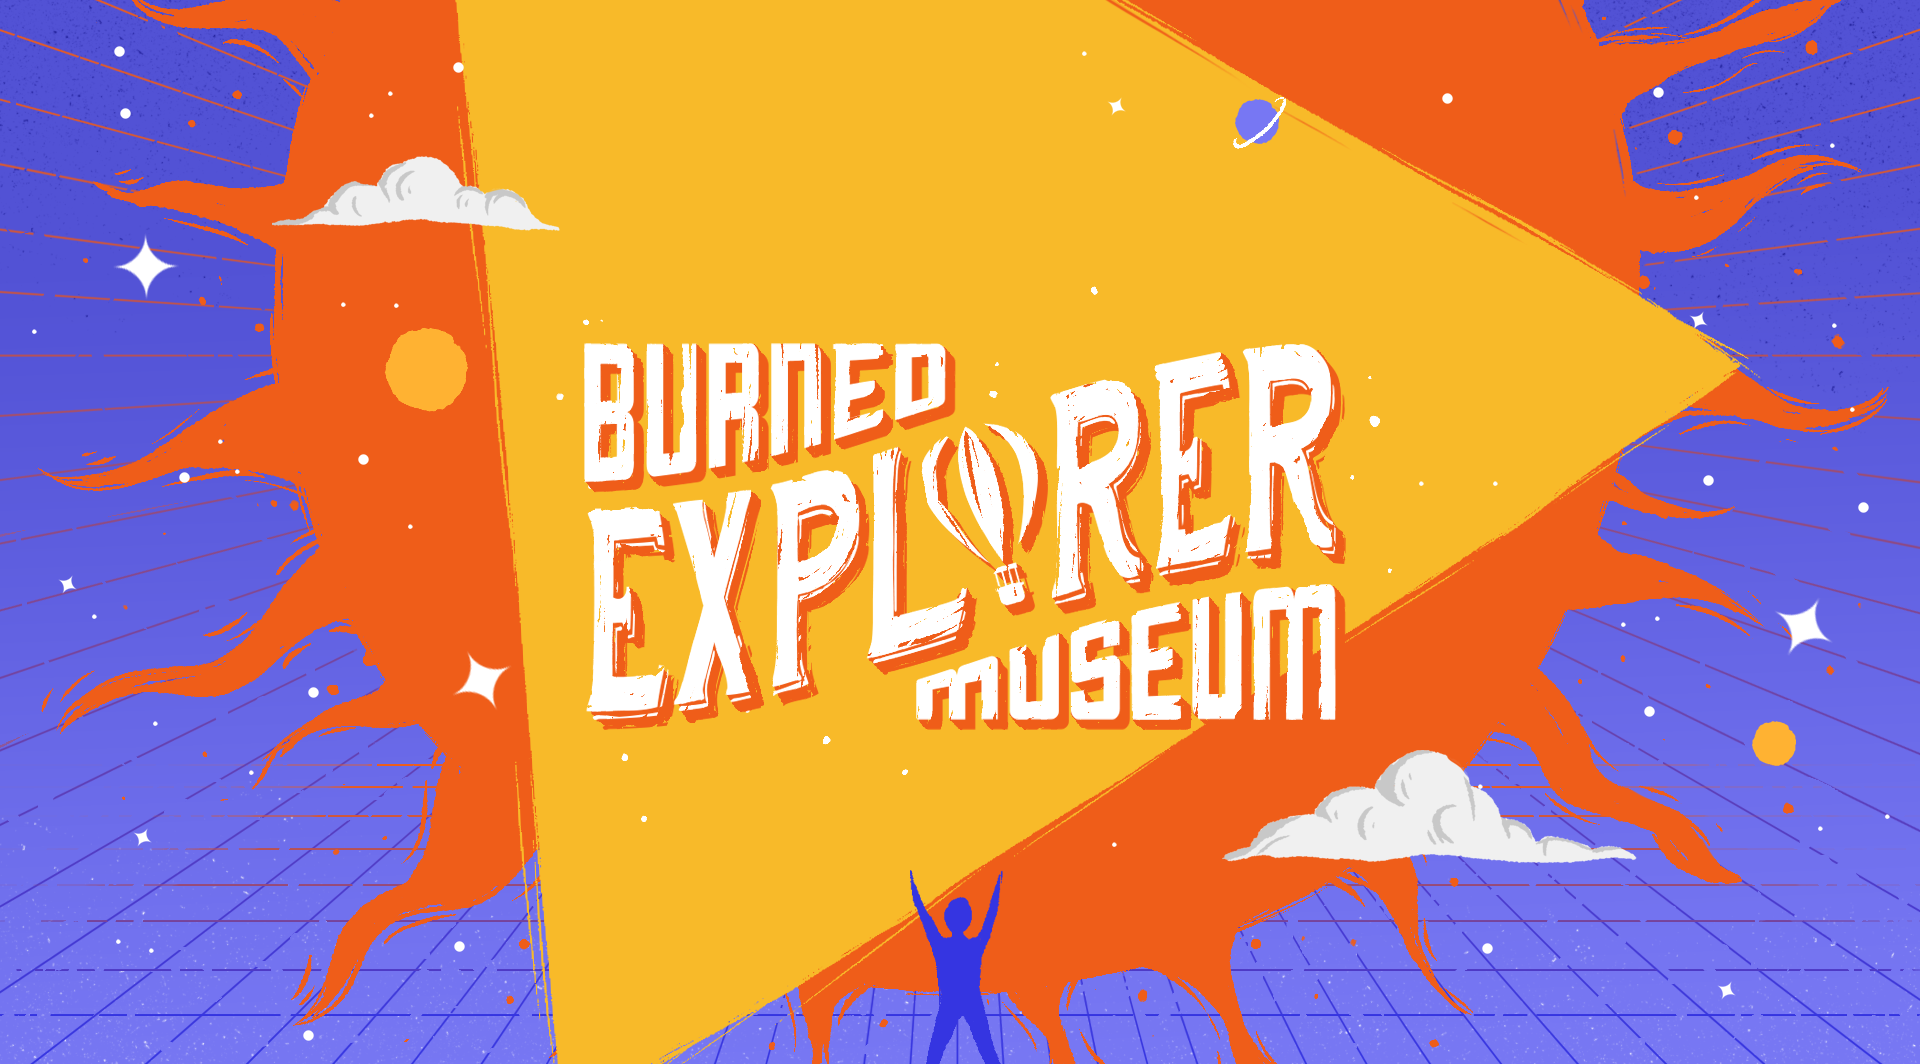 Burned Explorer Museum is open